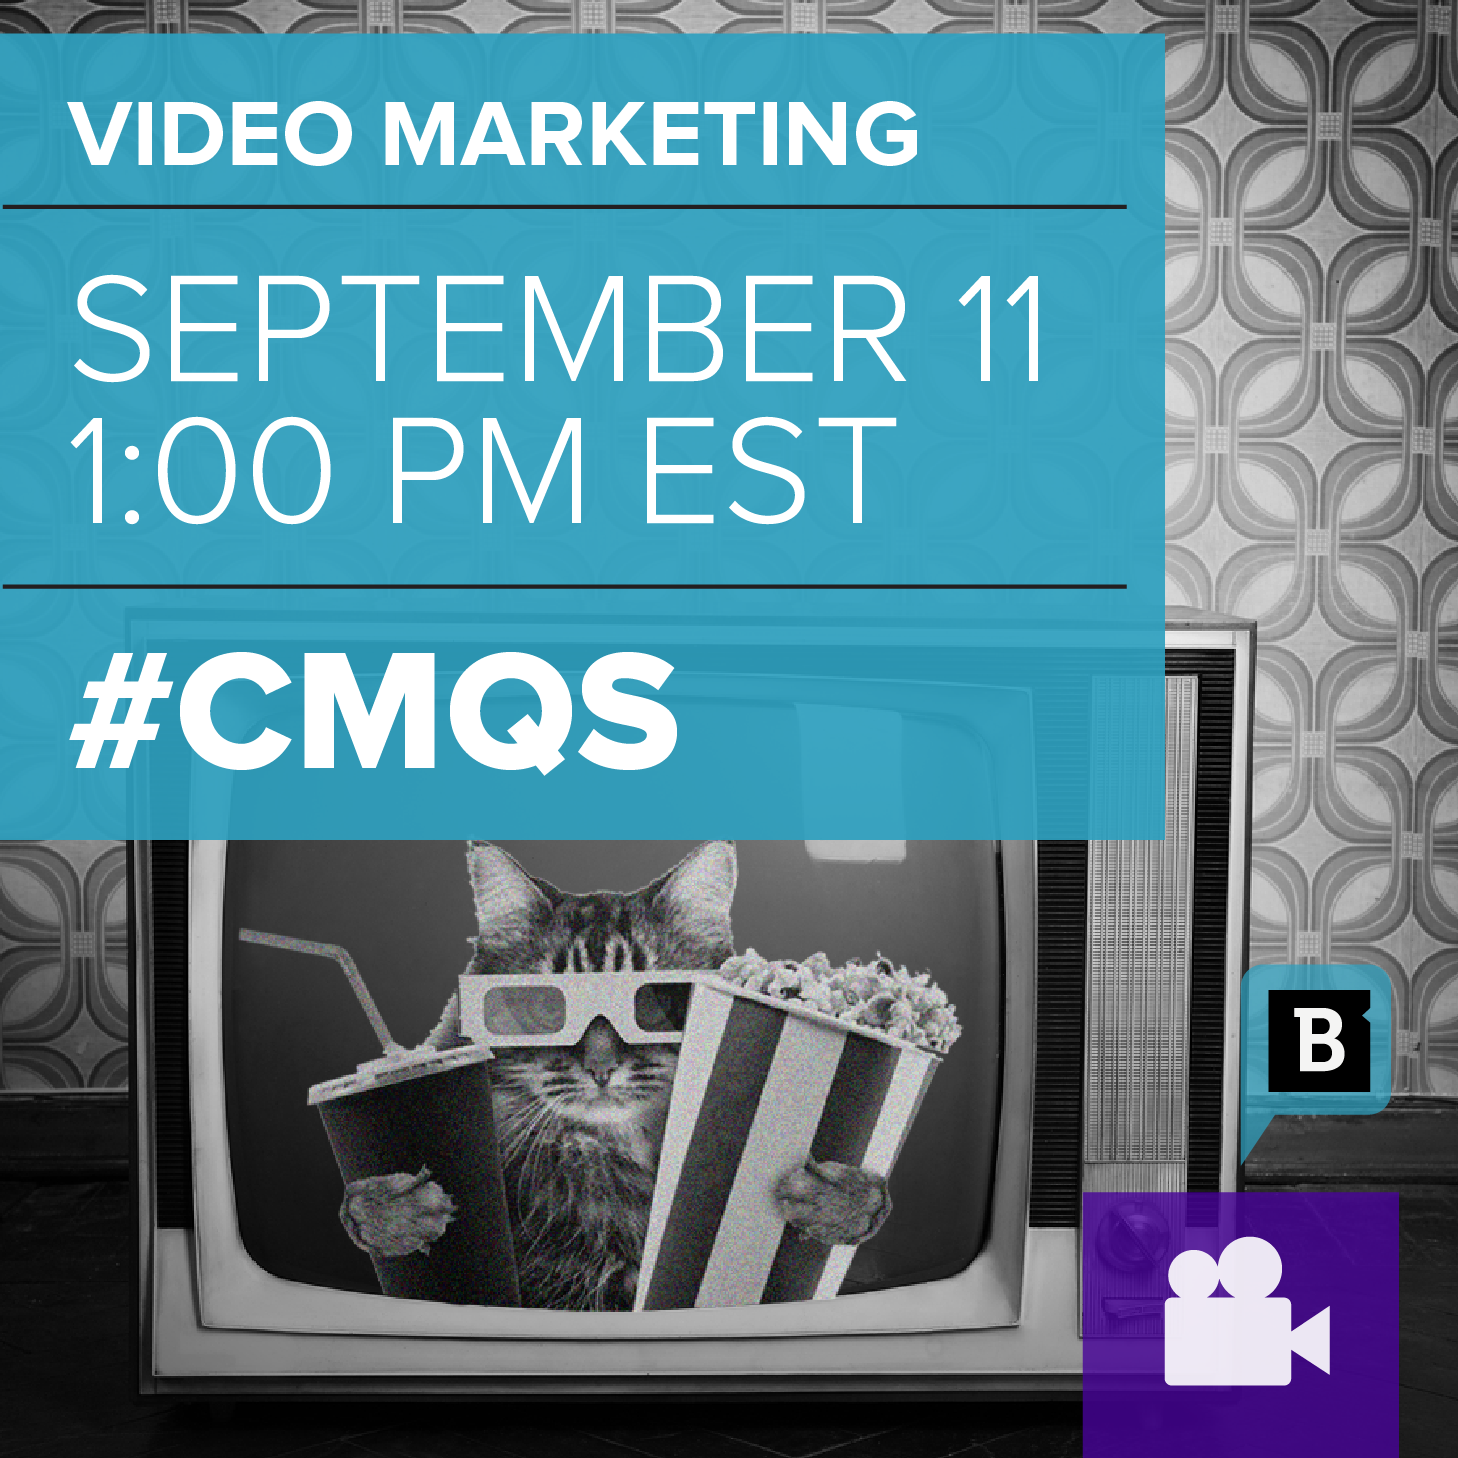 Brafton's Video Webinar #cmQs discuss video content.